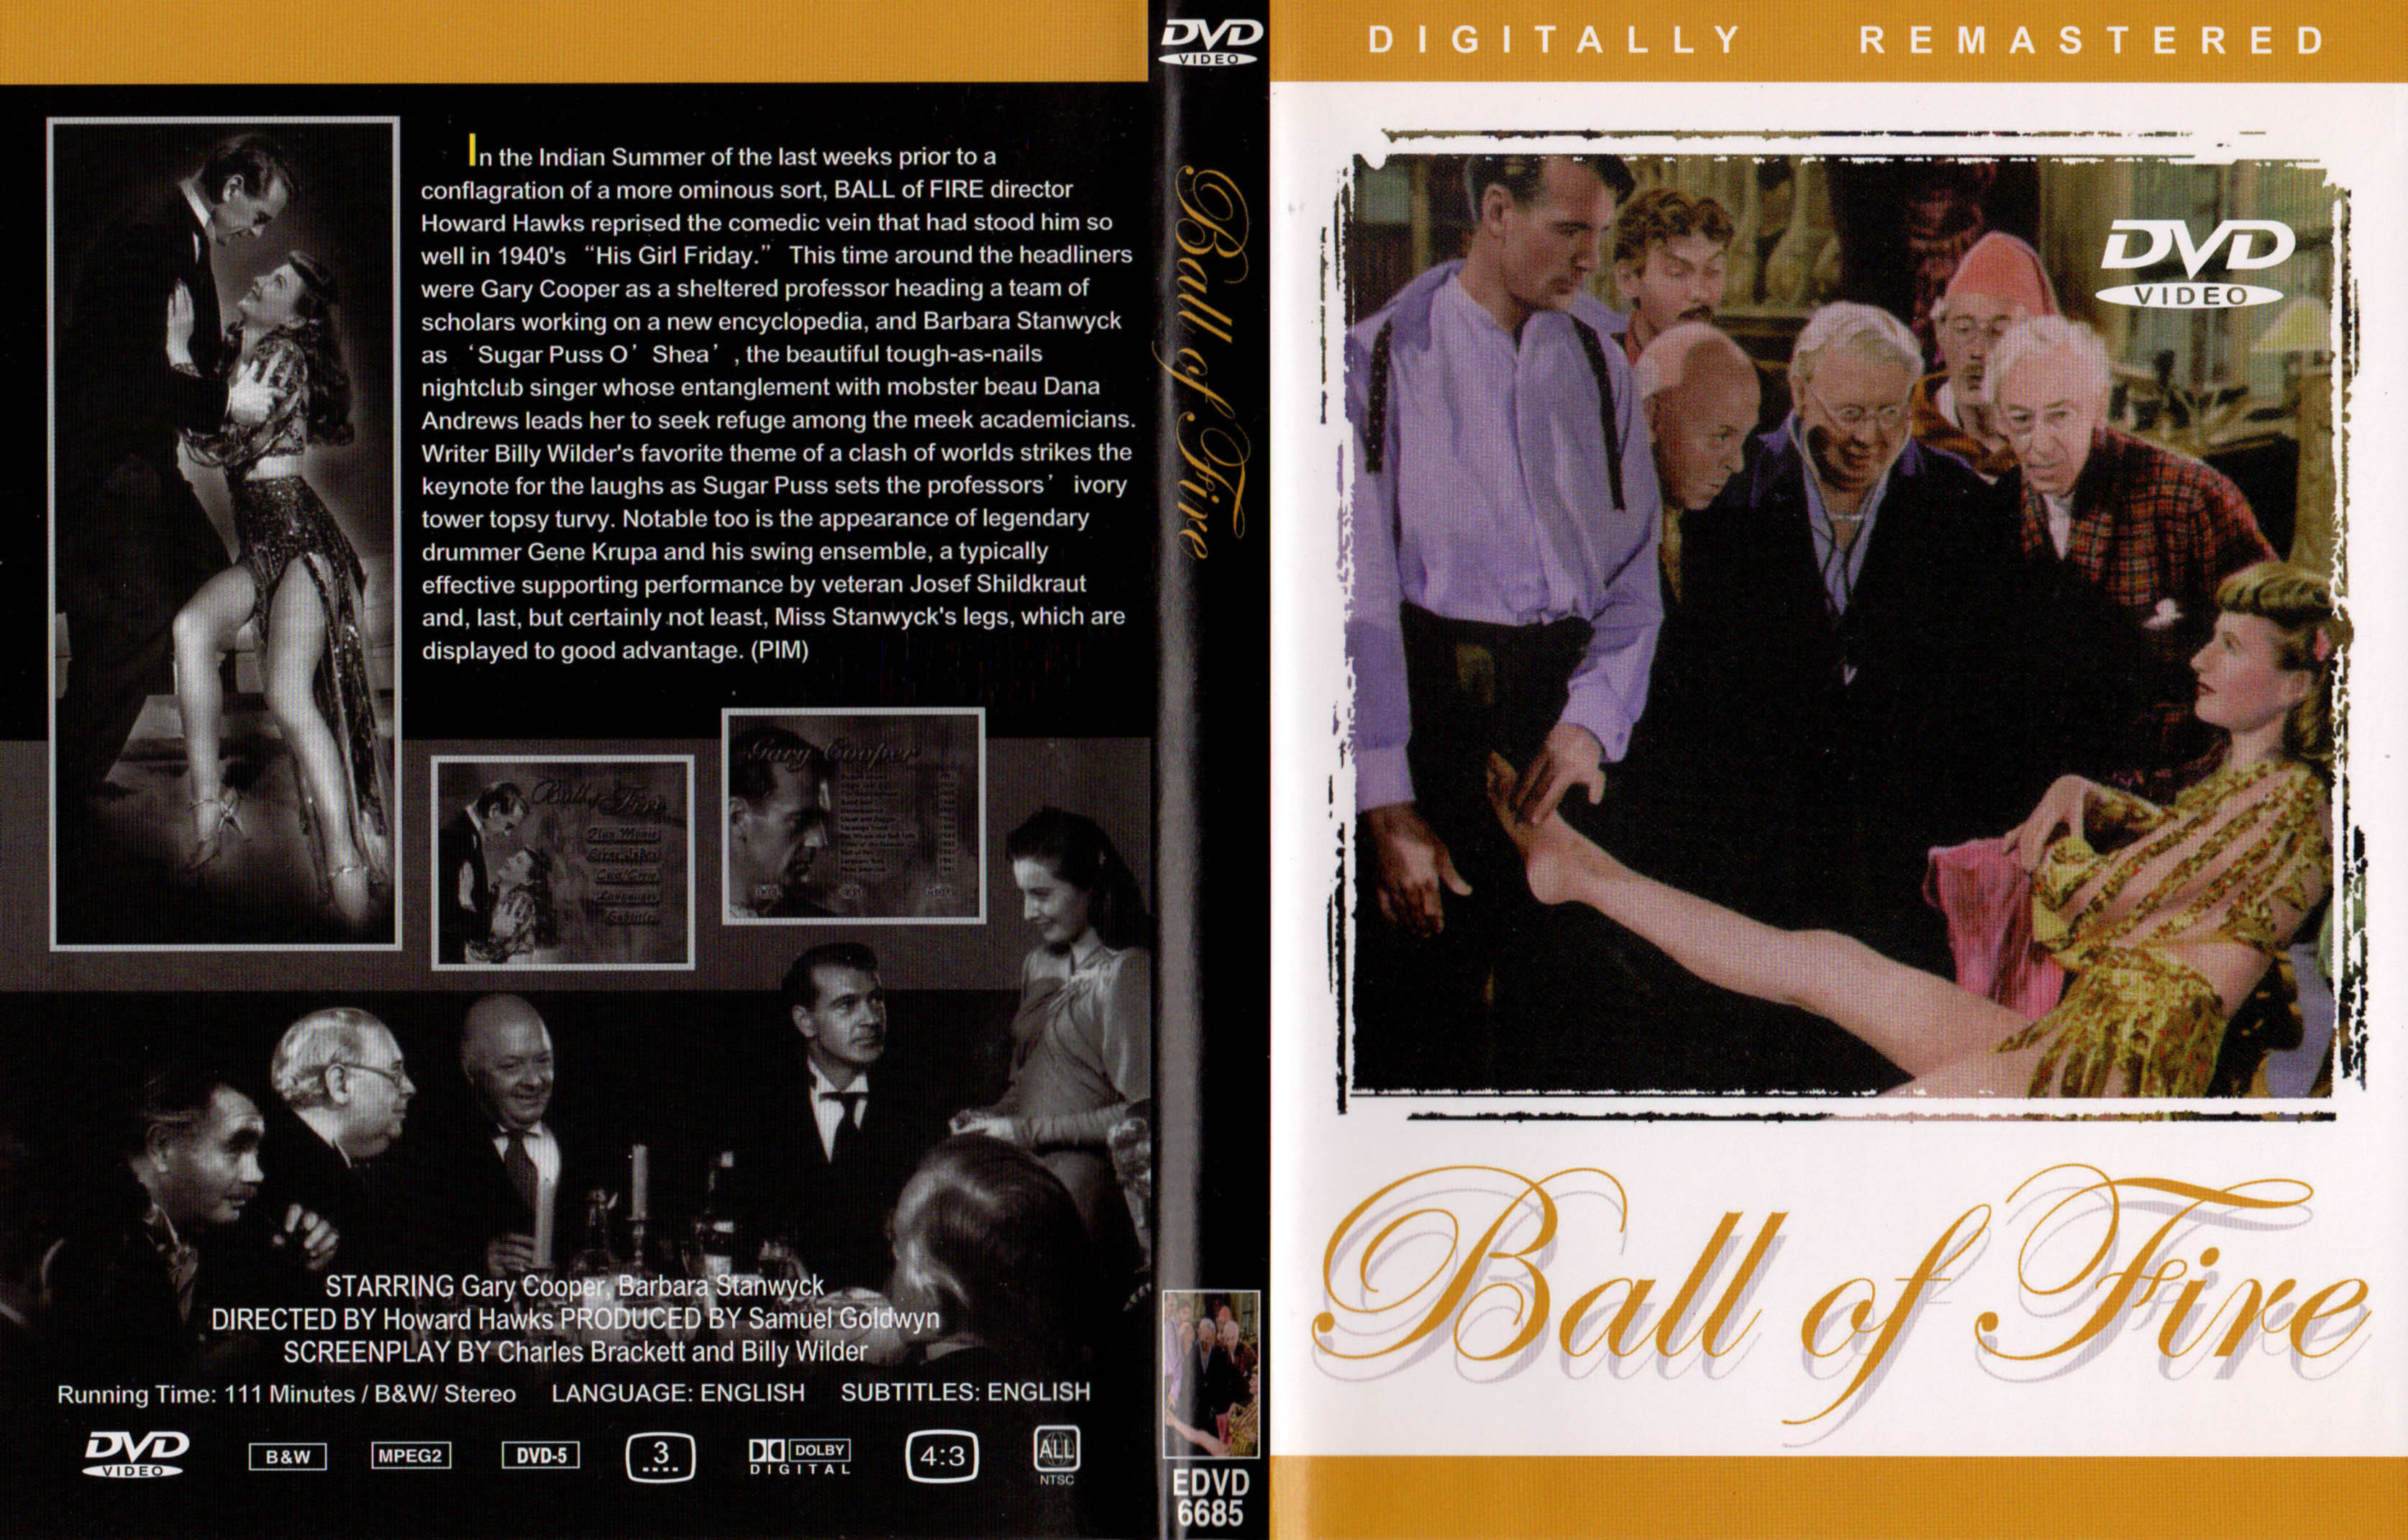 Jaquette DVD Ball of fire